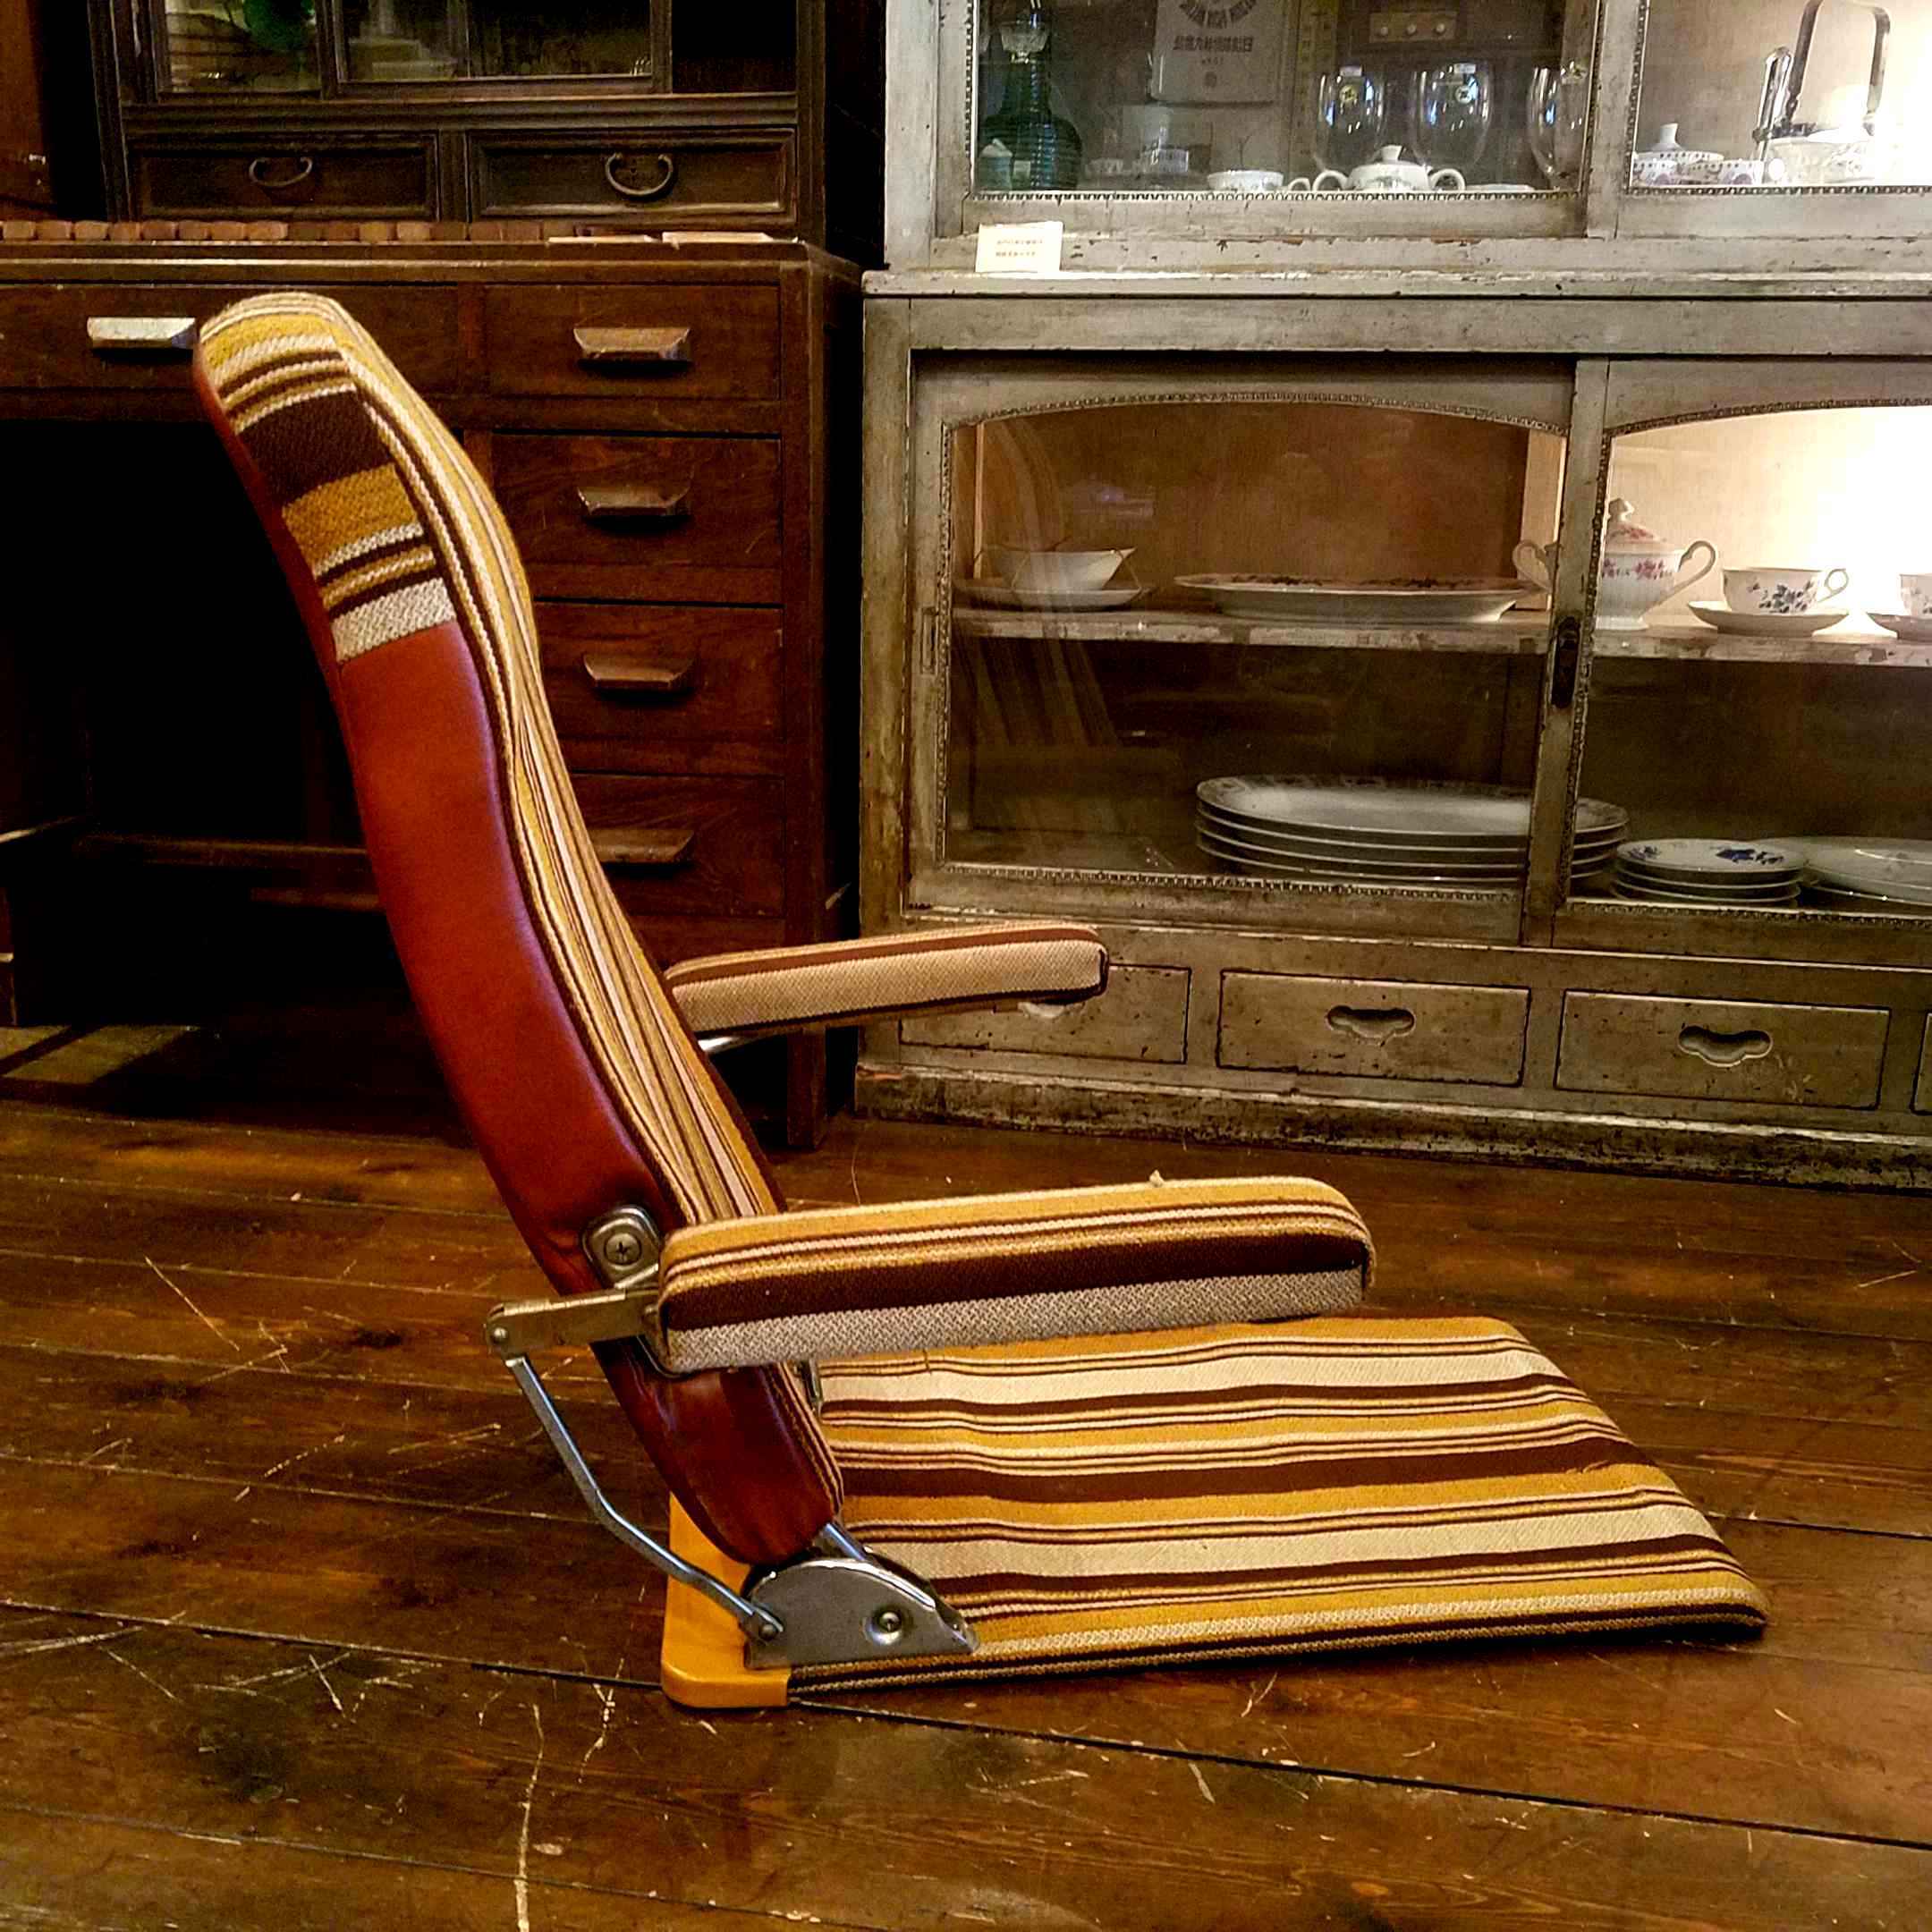 70'sストライプのビンテージな折畳み座椅子 - [Sold Out]過去の販売商品